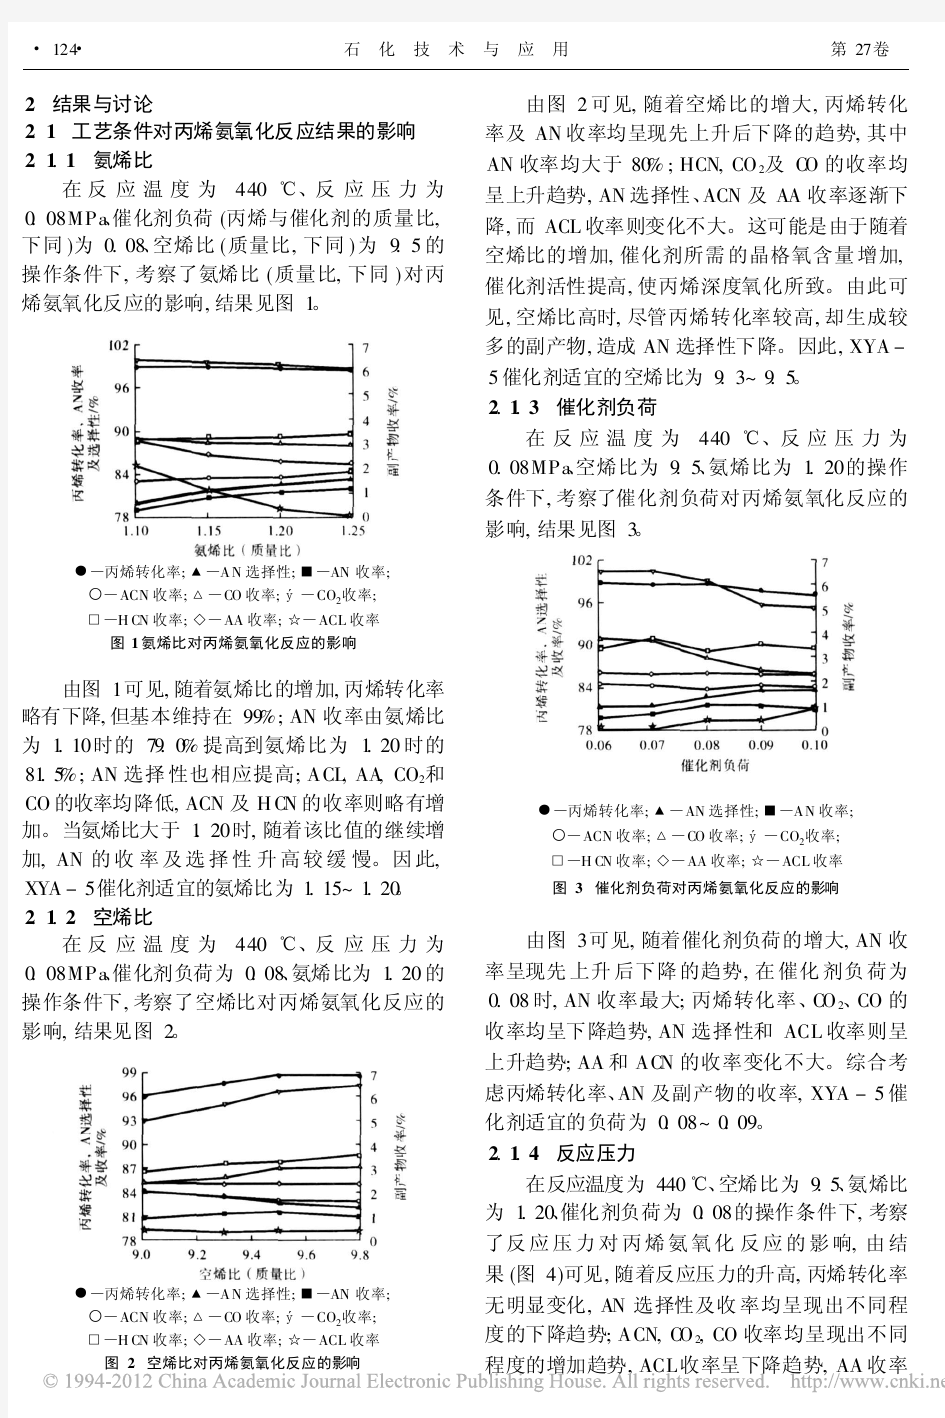 丙烯氨氧化制丙烯腈XYA_5催化剂的性能评价_康秀娟